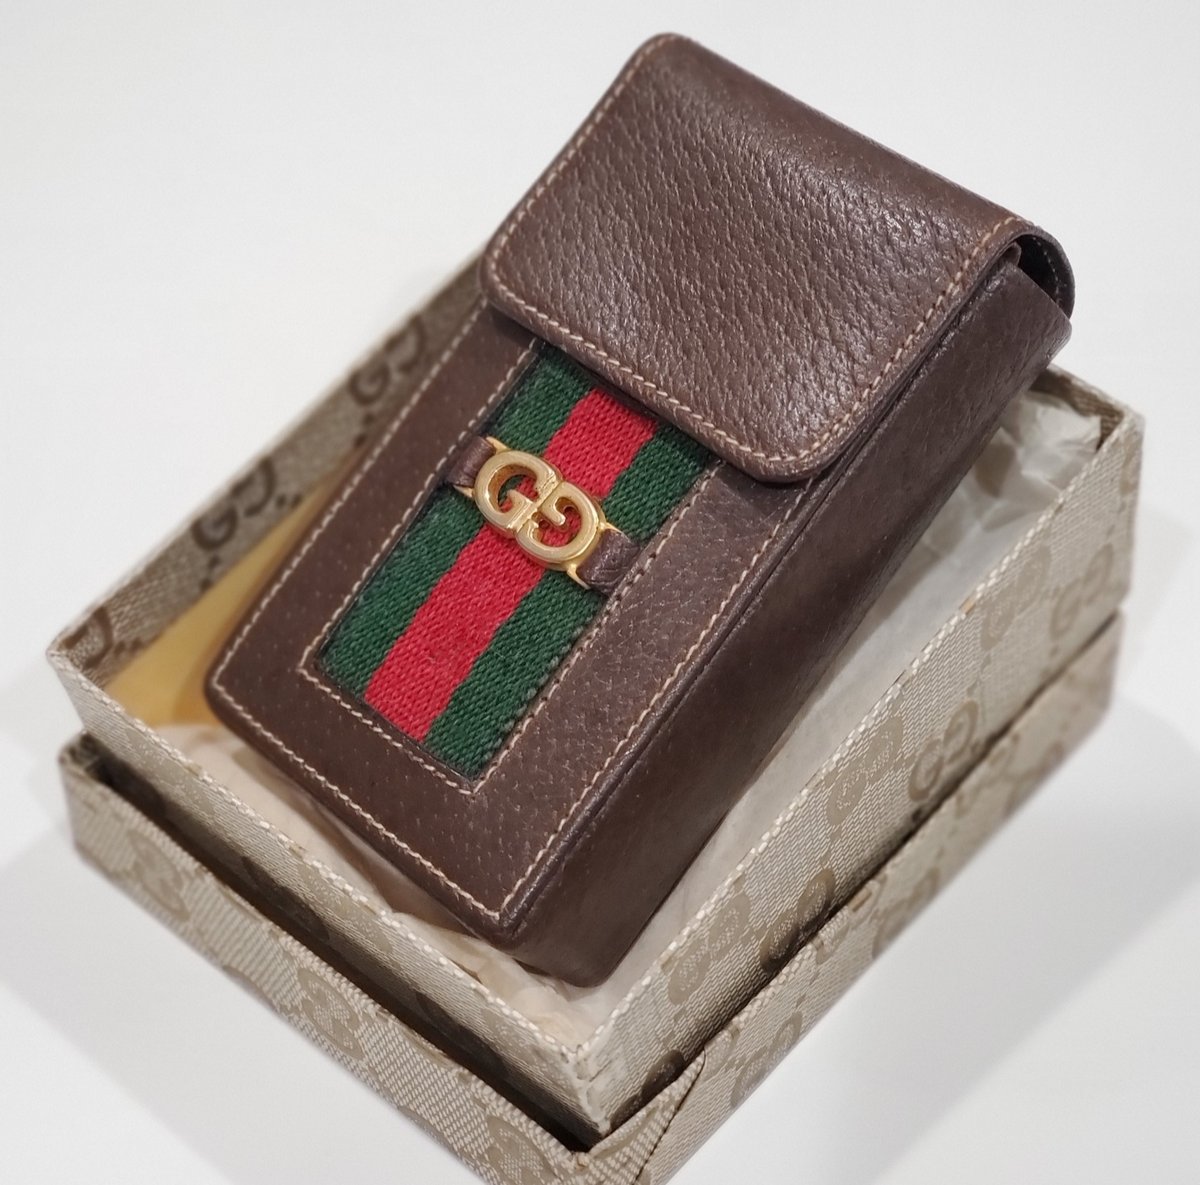 Gucci Cigarette Case Gucci Shima Leather Lavender 181716 Free Shipping